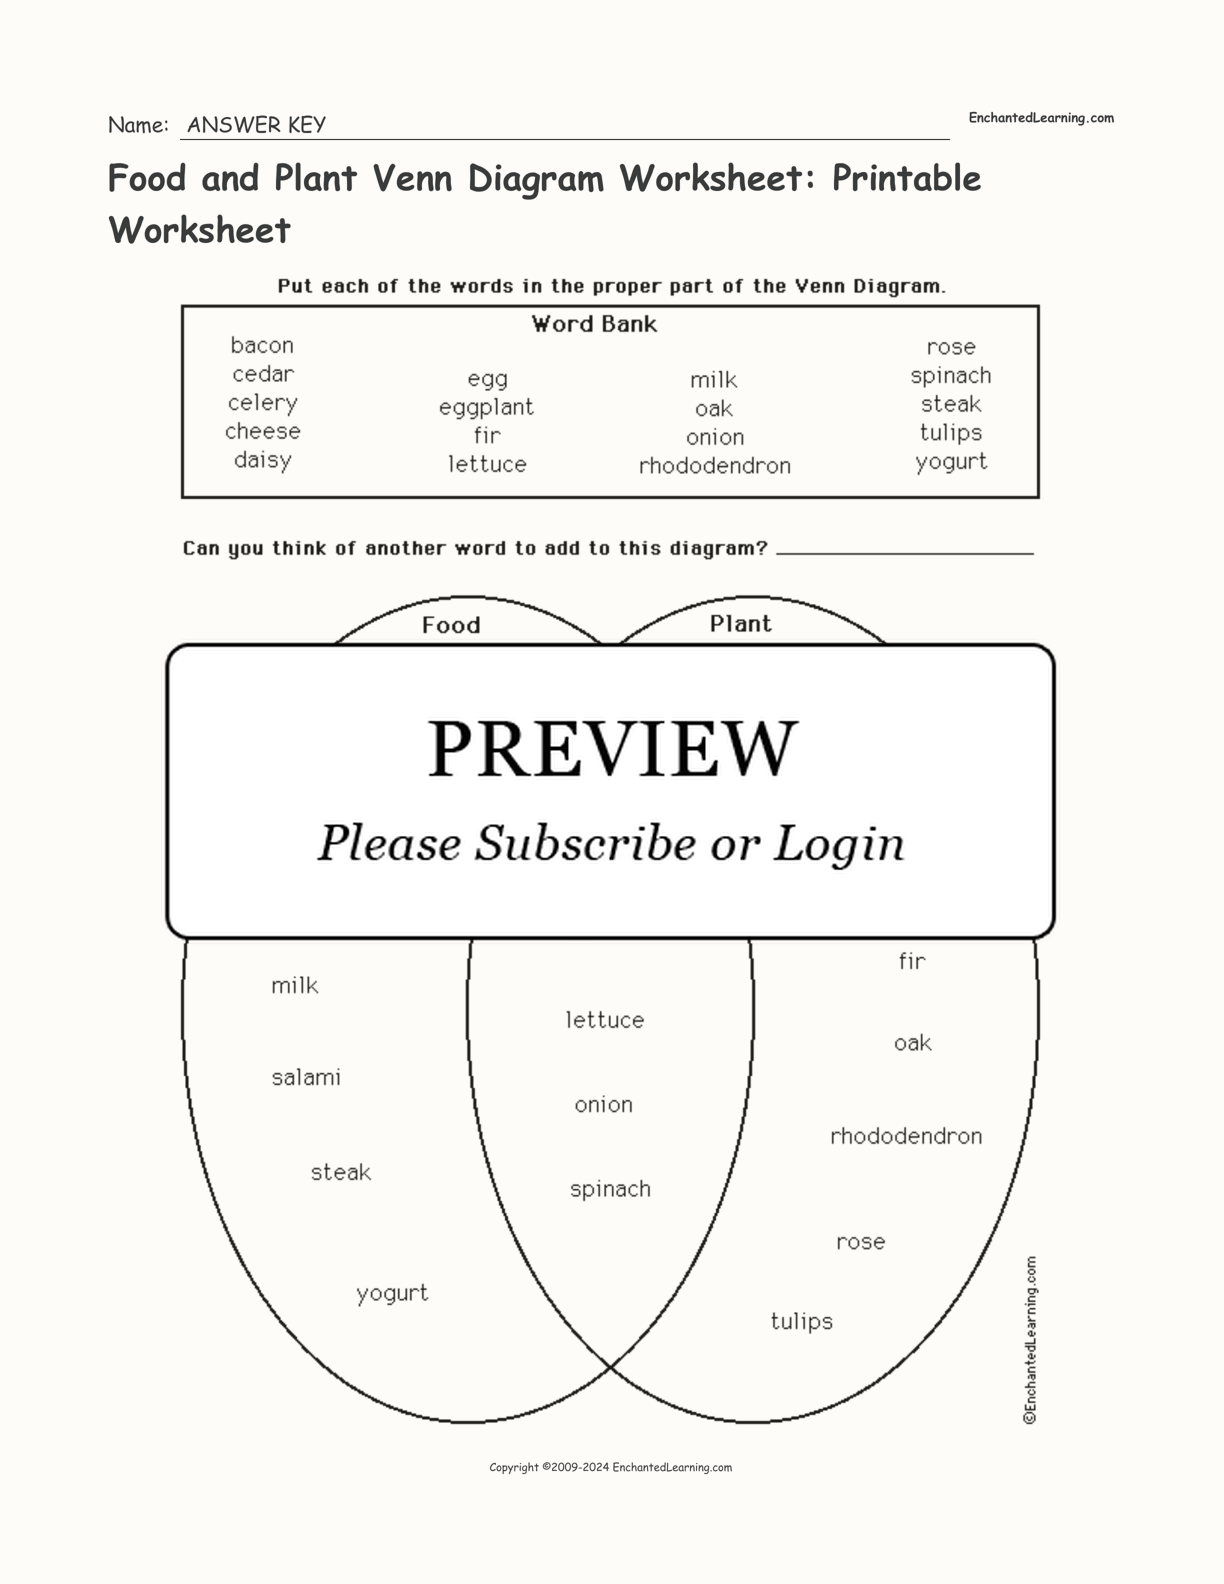 Food and Plant Venn Diagram Worksheet: Printable Worksheet interactive worksheet page 2